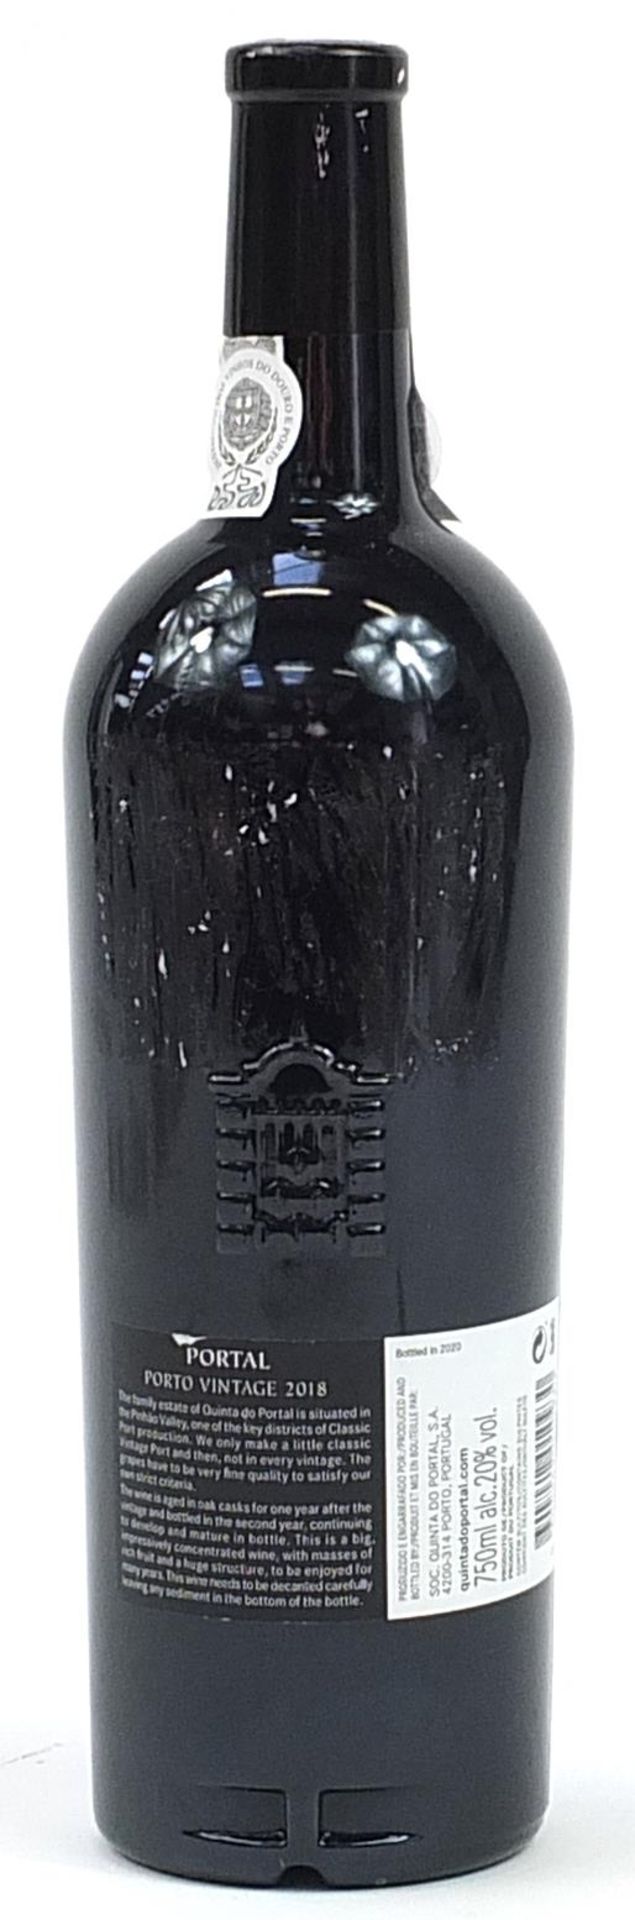 75cl bottle of 2018 Quinta do Portal vintage port - Image 2 of 2